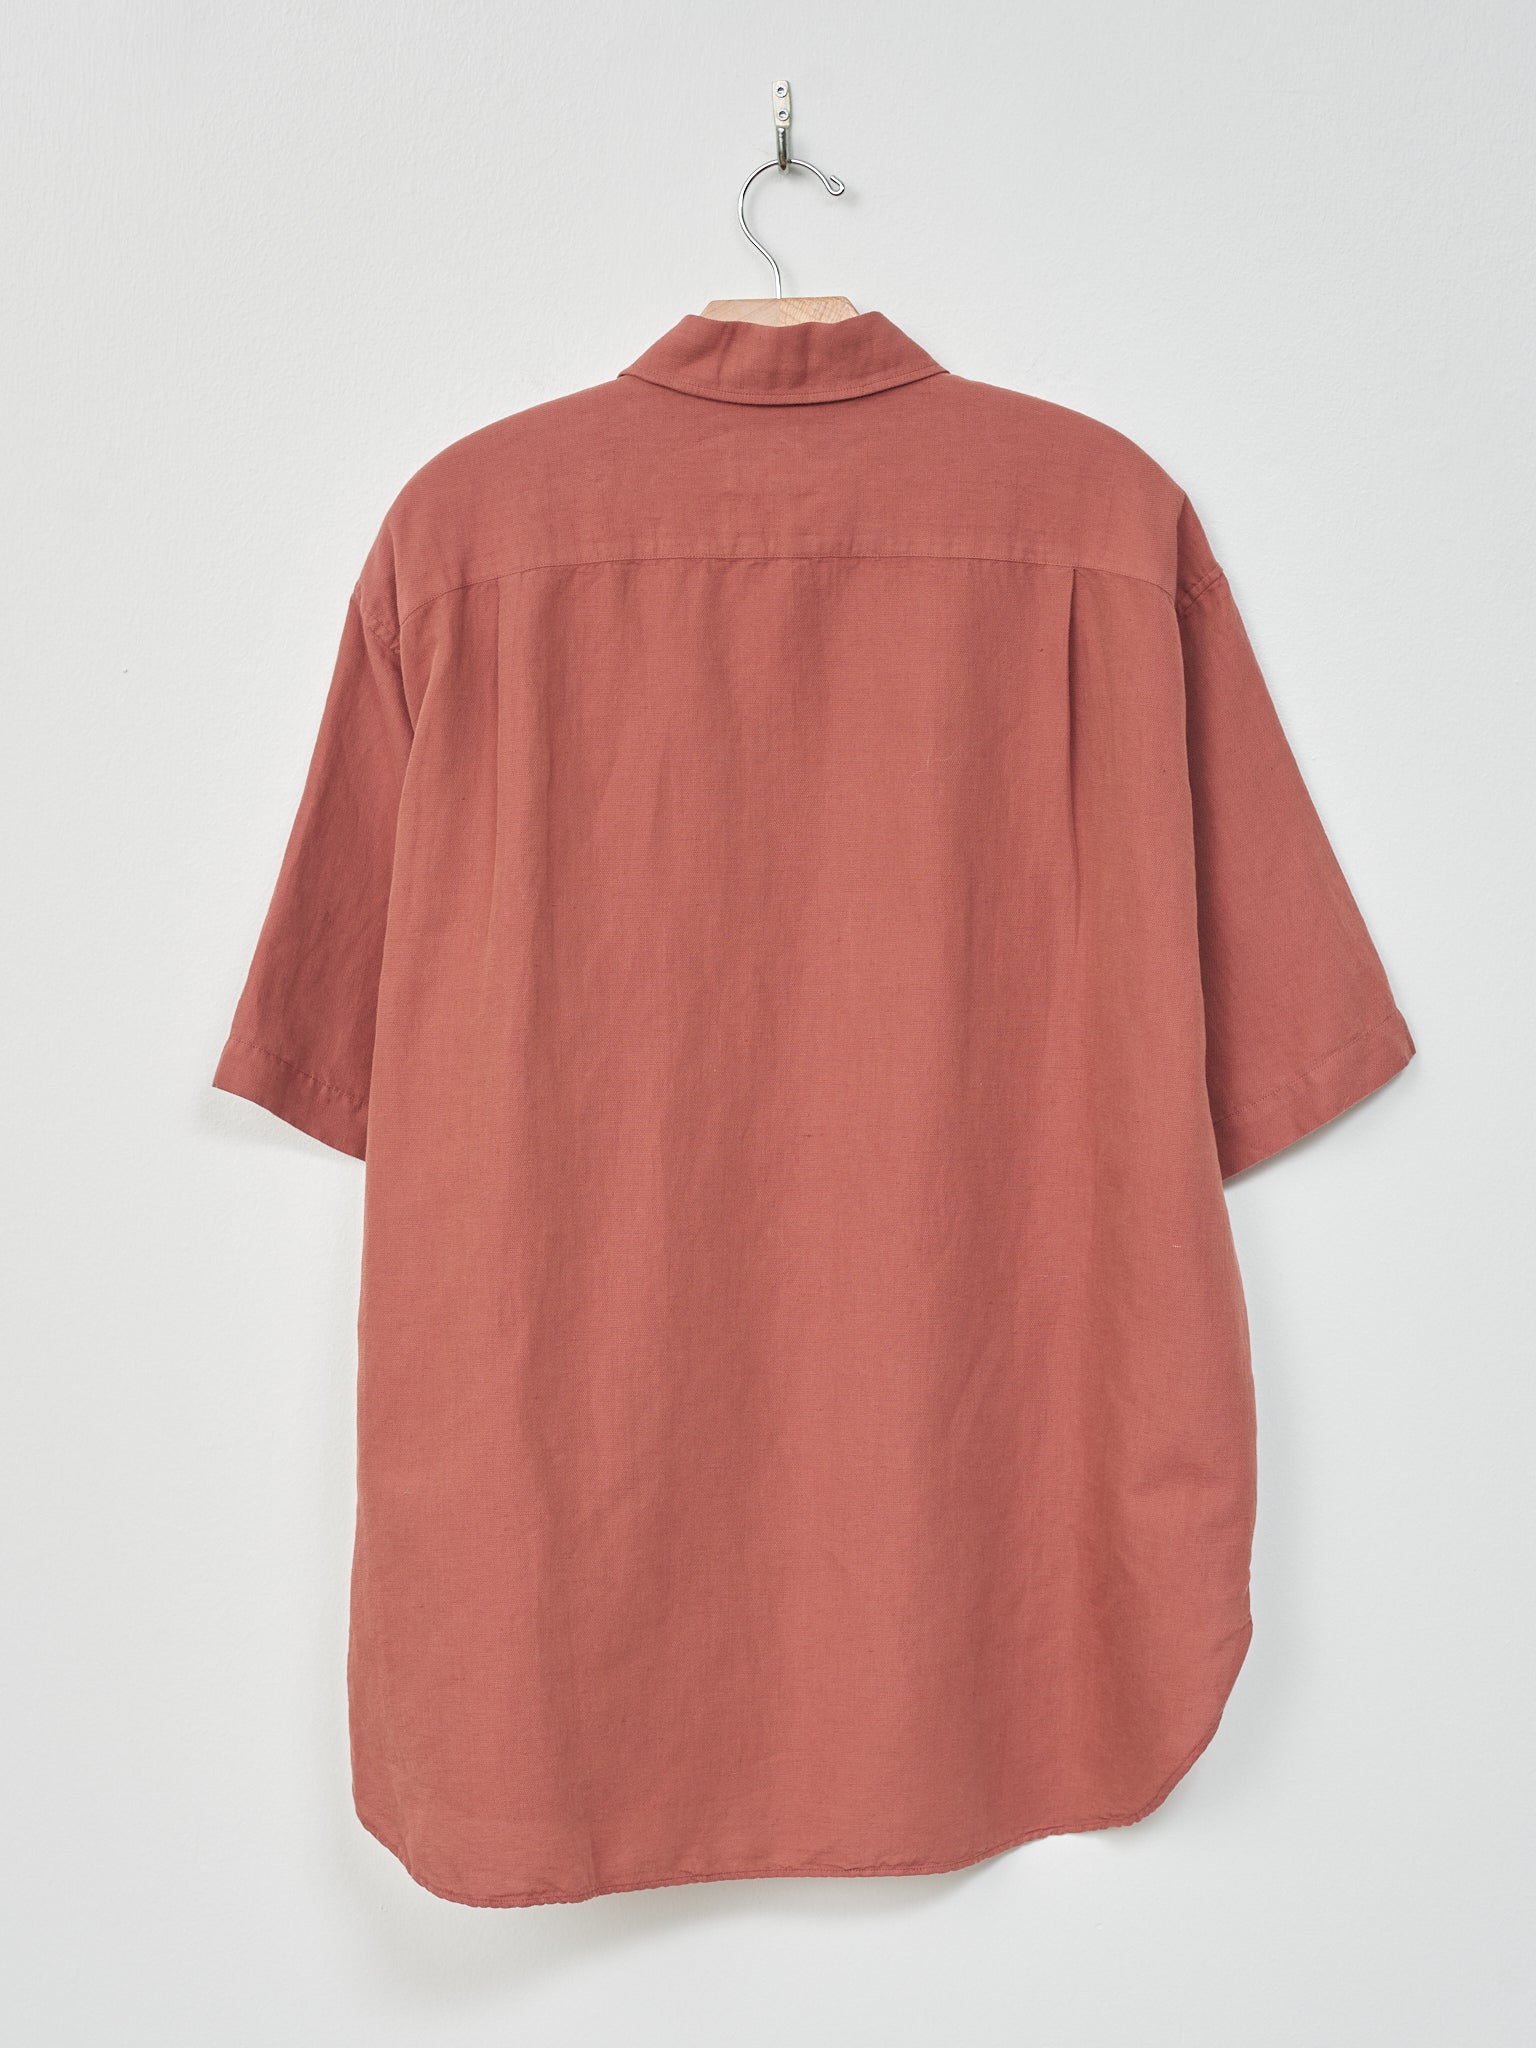 Namu Shop - Yoko Sakamoto Open Collar Shirt - Red